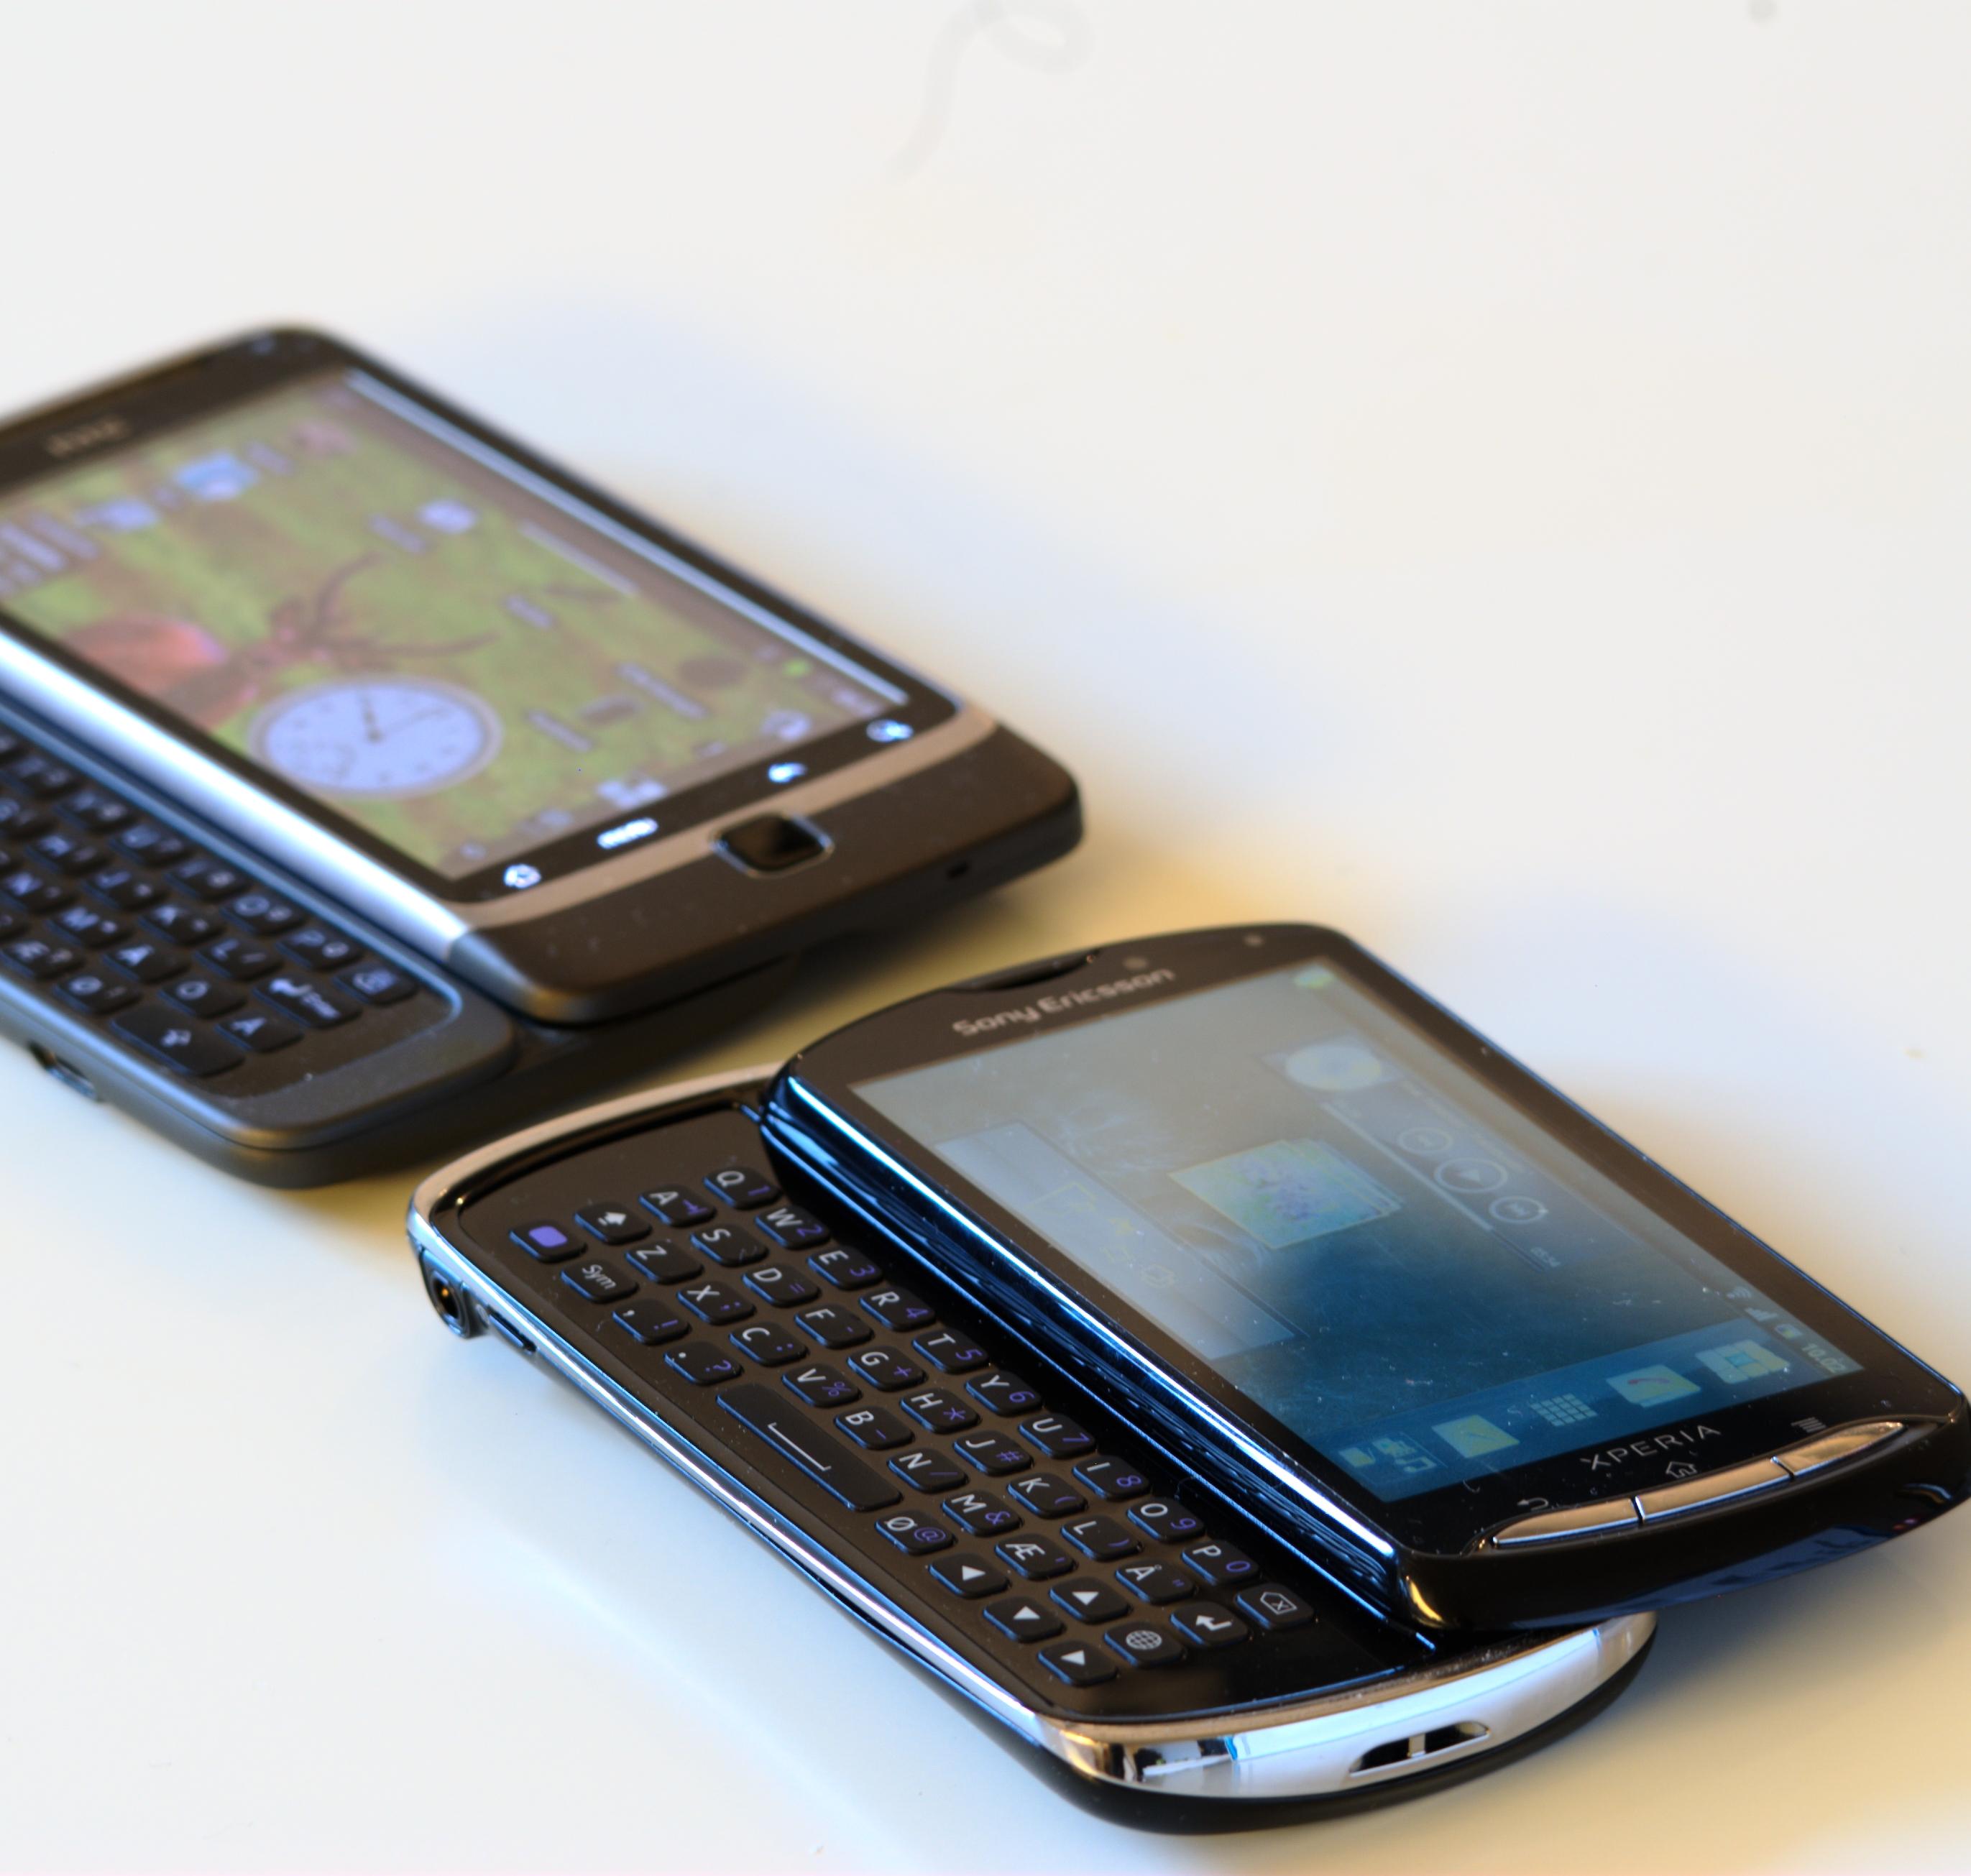 Xperia pro (nederst) er nokså lik HTC Desire Z (øverst) i størrelse. (Foto: Einar Eriksen)